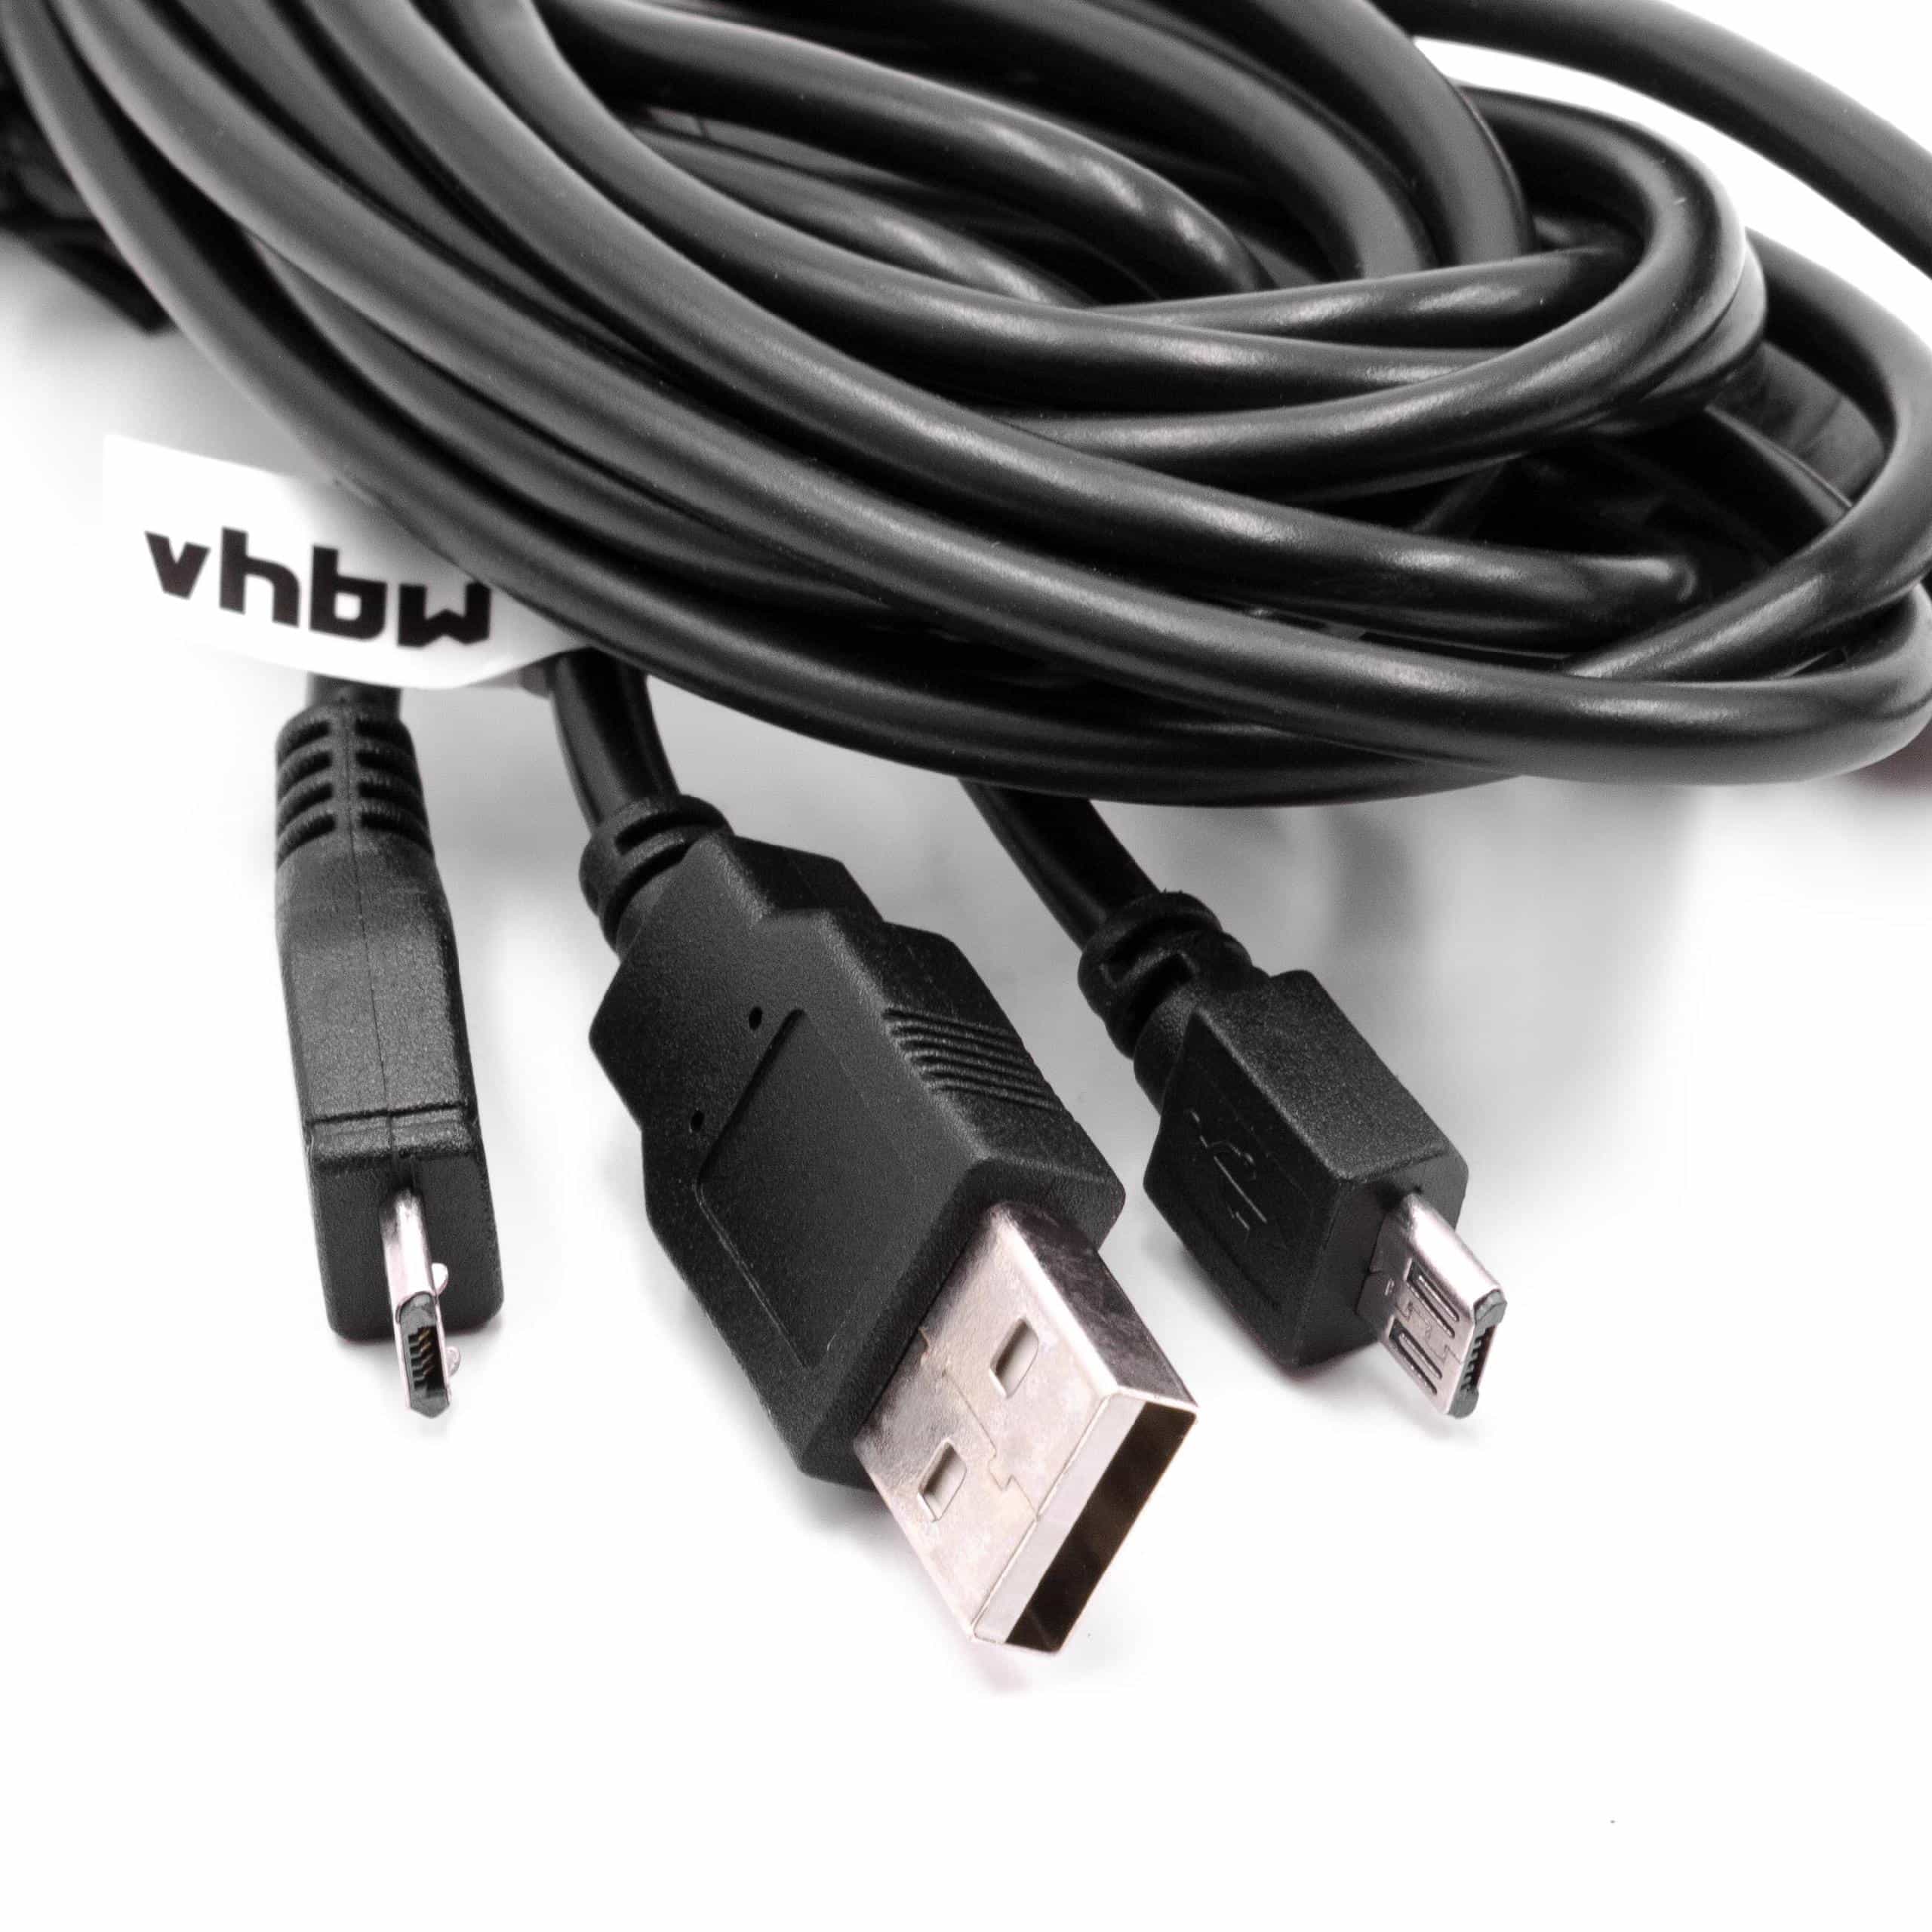 Cable de carga USB para videoconsolas Sony PS4 DualShock 4 Controller - Cable Y, 3,41 m, negro